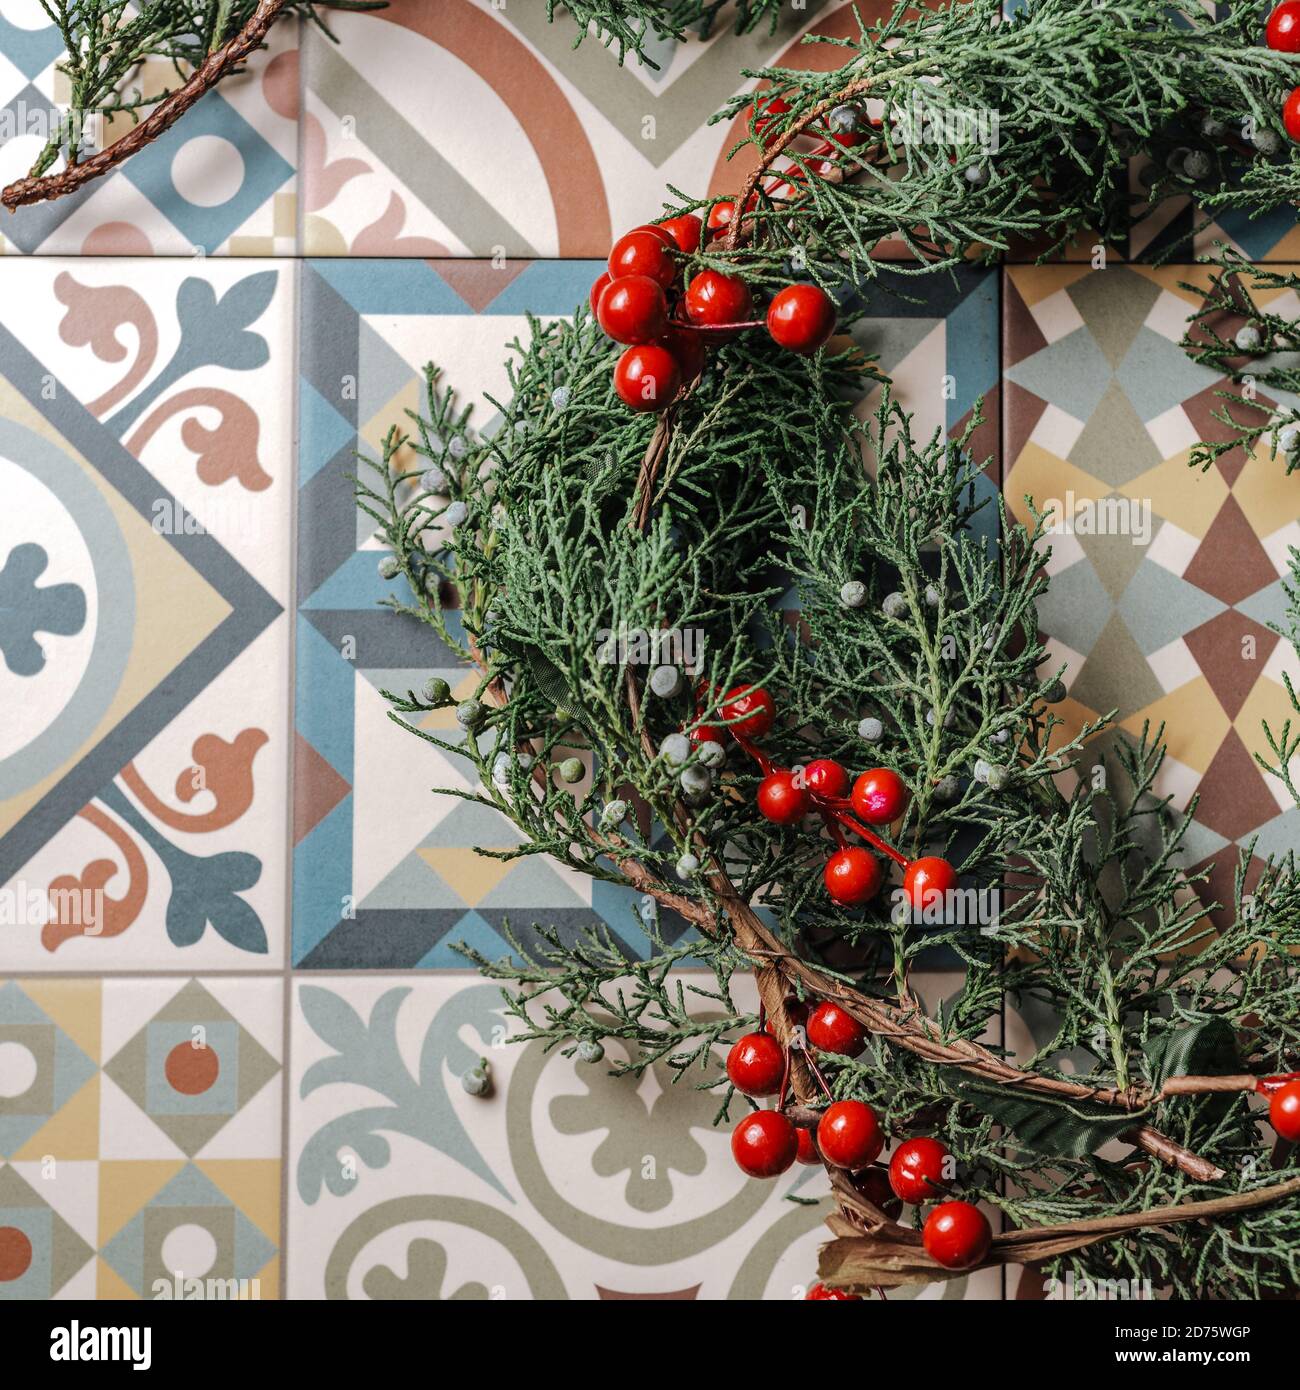 Weihnachten Kranz Detail der immergrünen, roten Beeren und gold Rentier auf Retro geometrische Fliesen. Nandian Netzwerk, grüner Zweig und rustikalen Krone. Fla Stockfoto